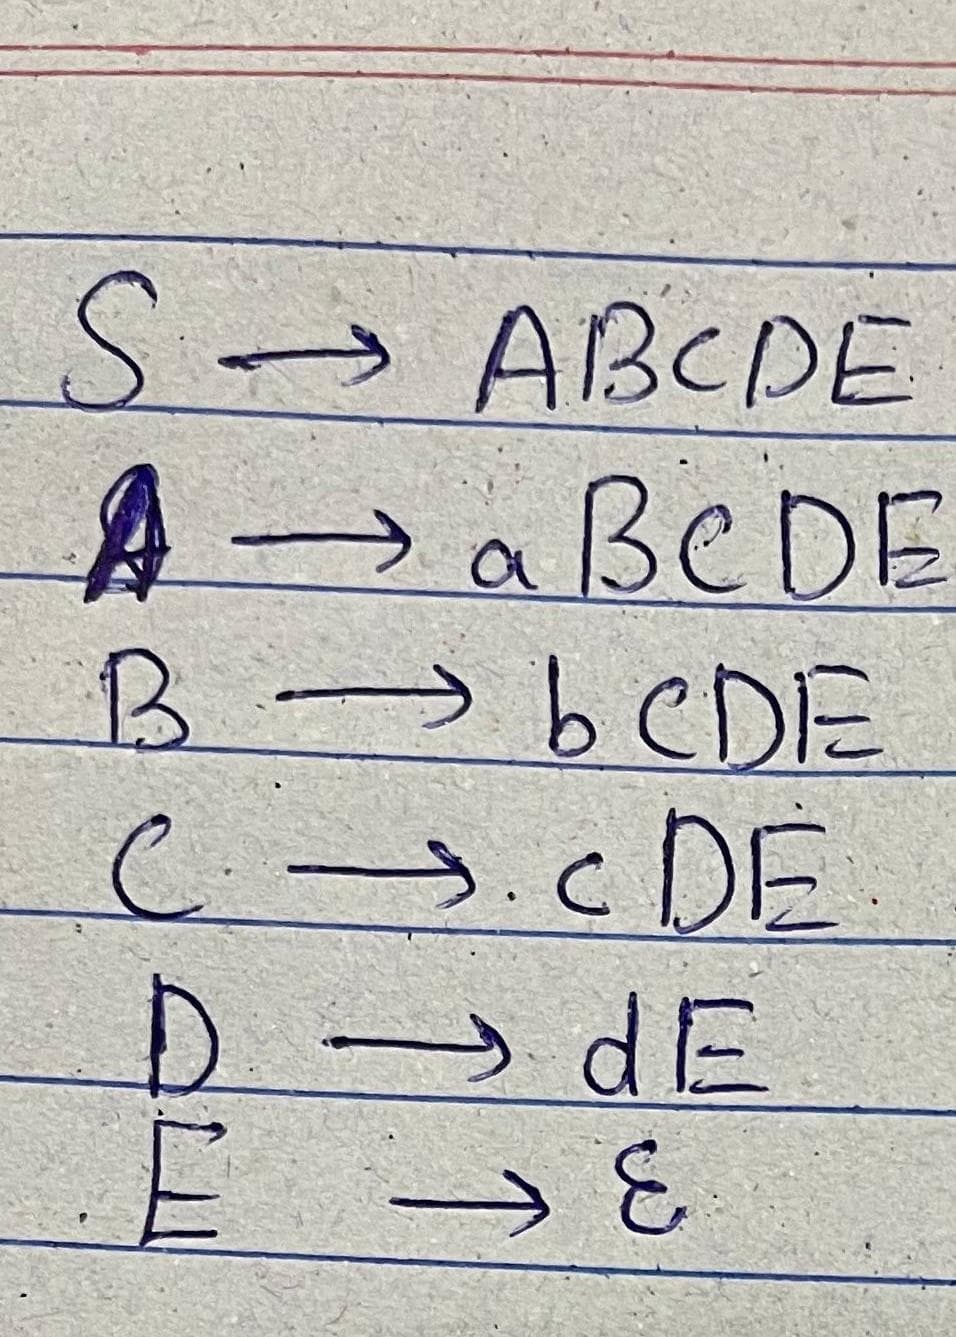 S.
>ABCDE
A aßeDE
beDE
>.cDE.
dE
D.
